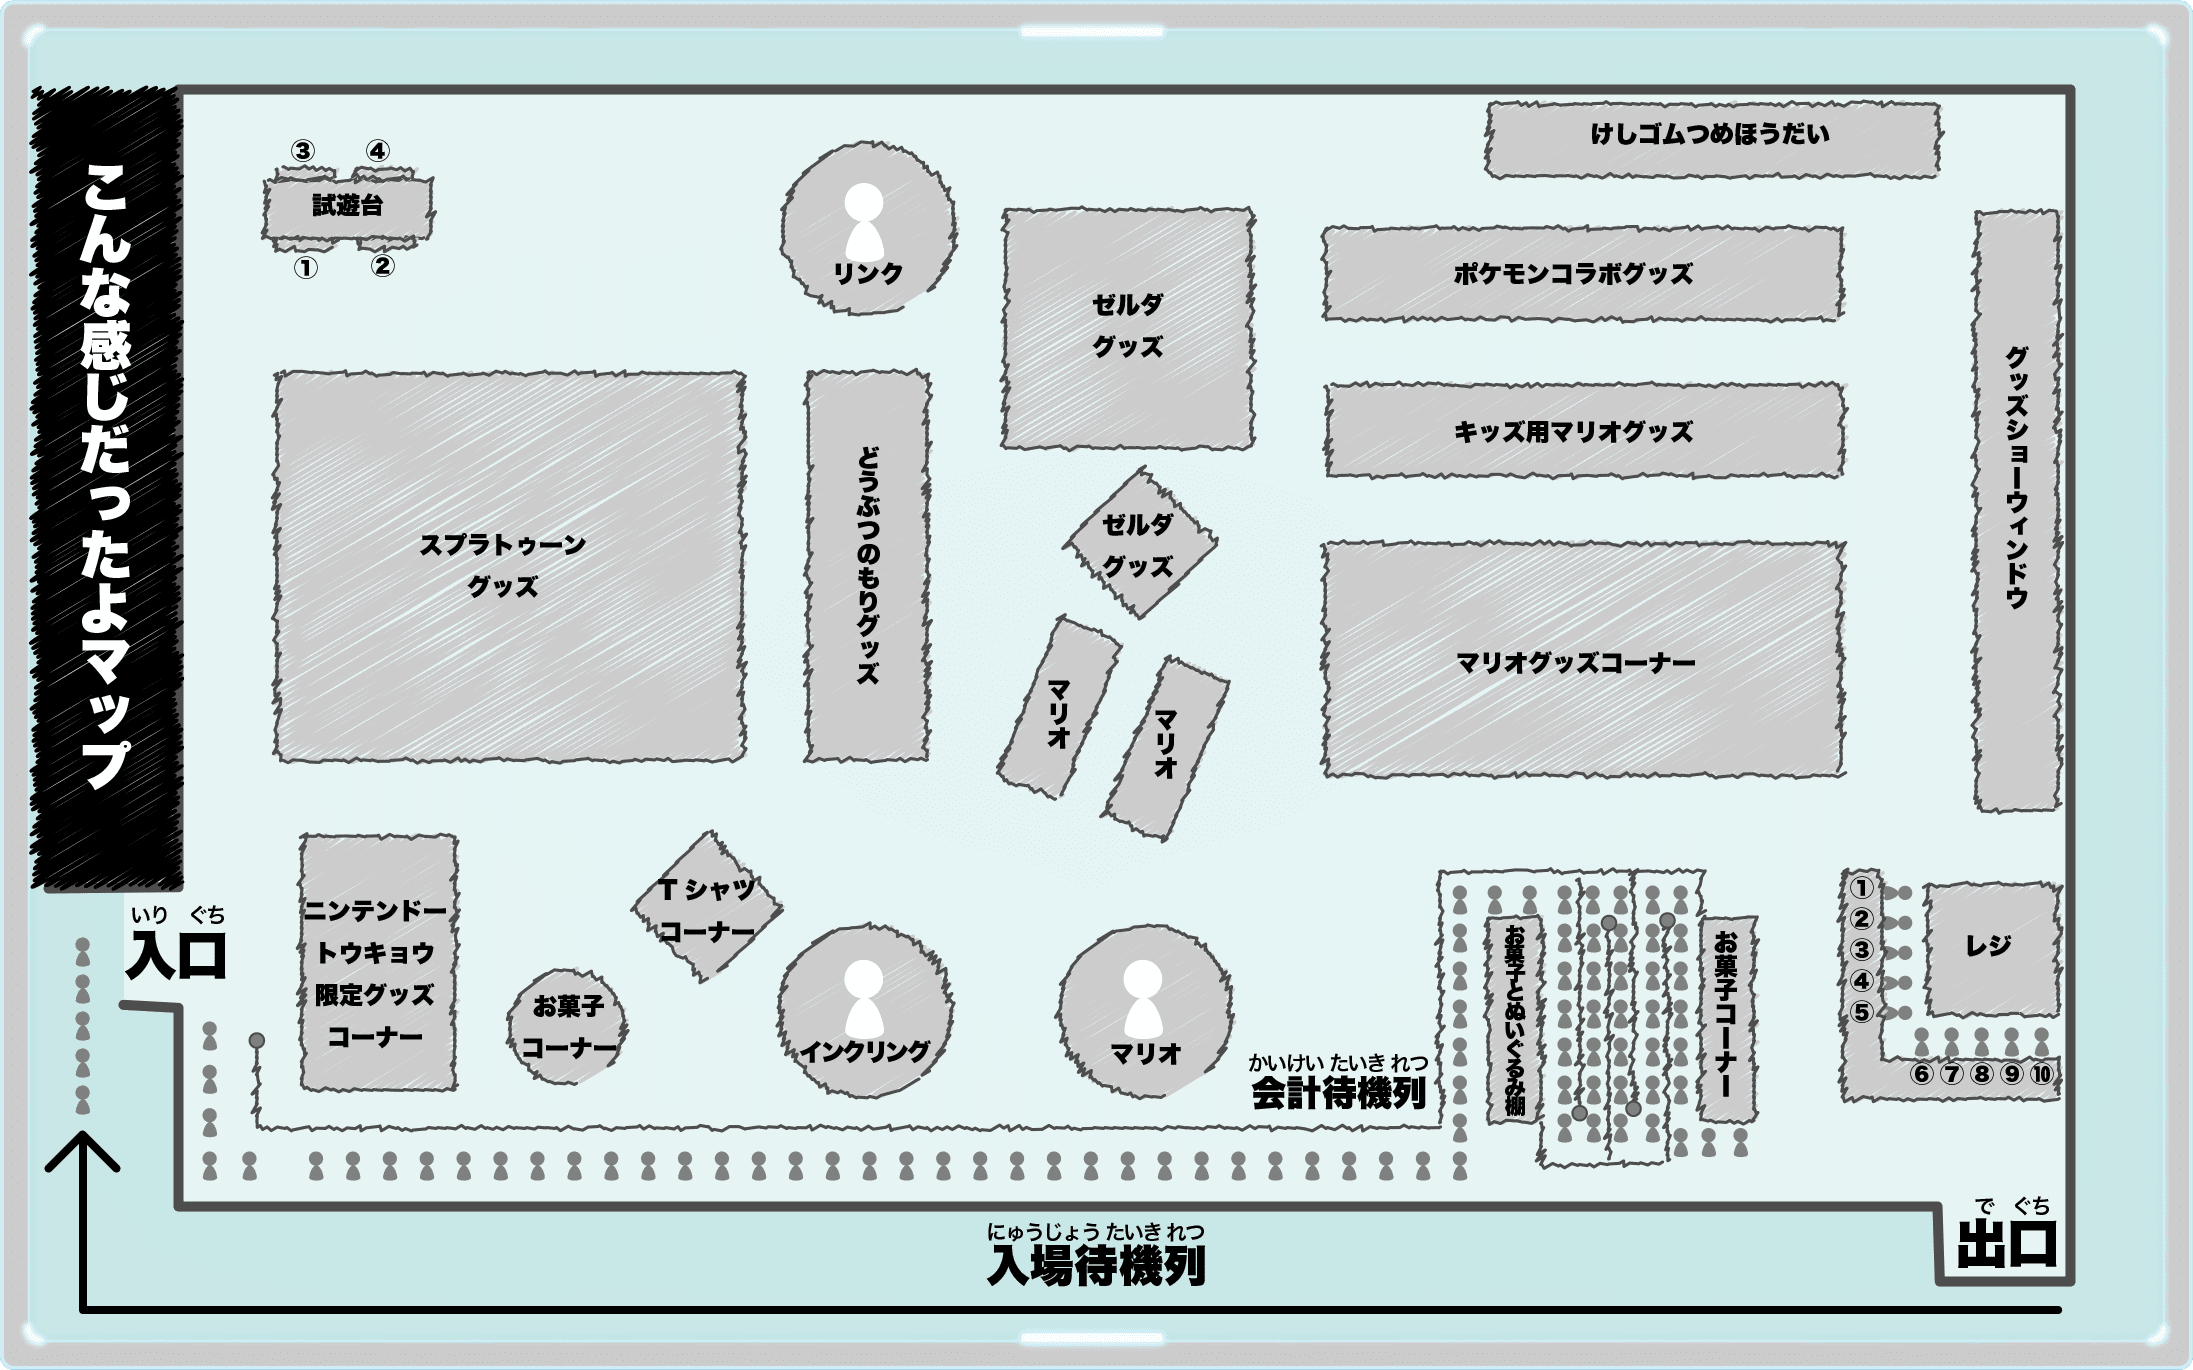 ニンテンドートーキョー店内マップ2019年11月版